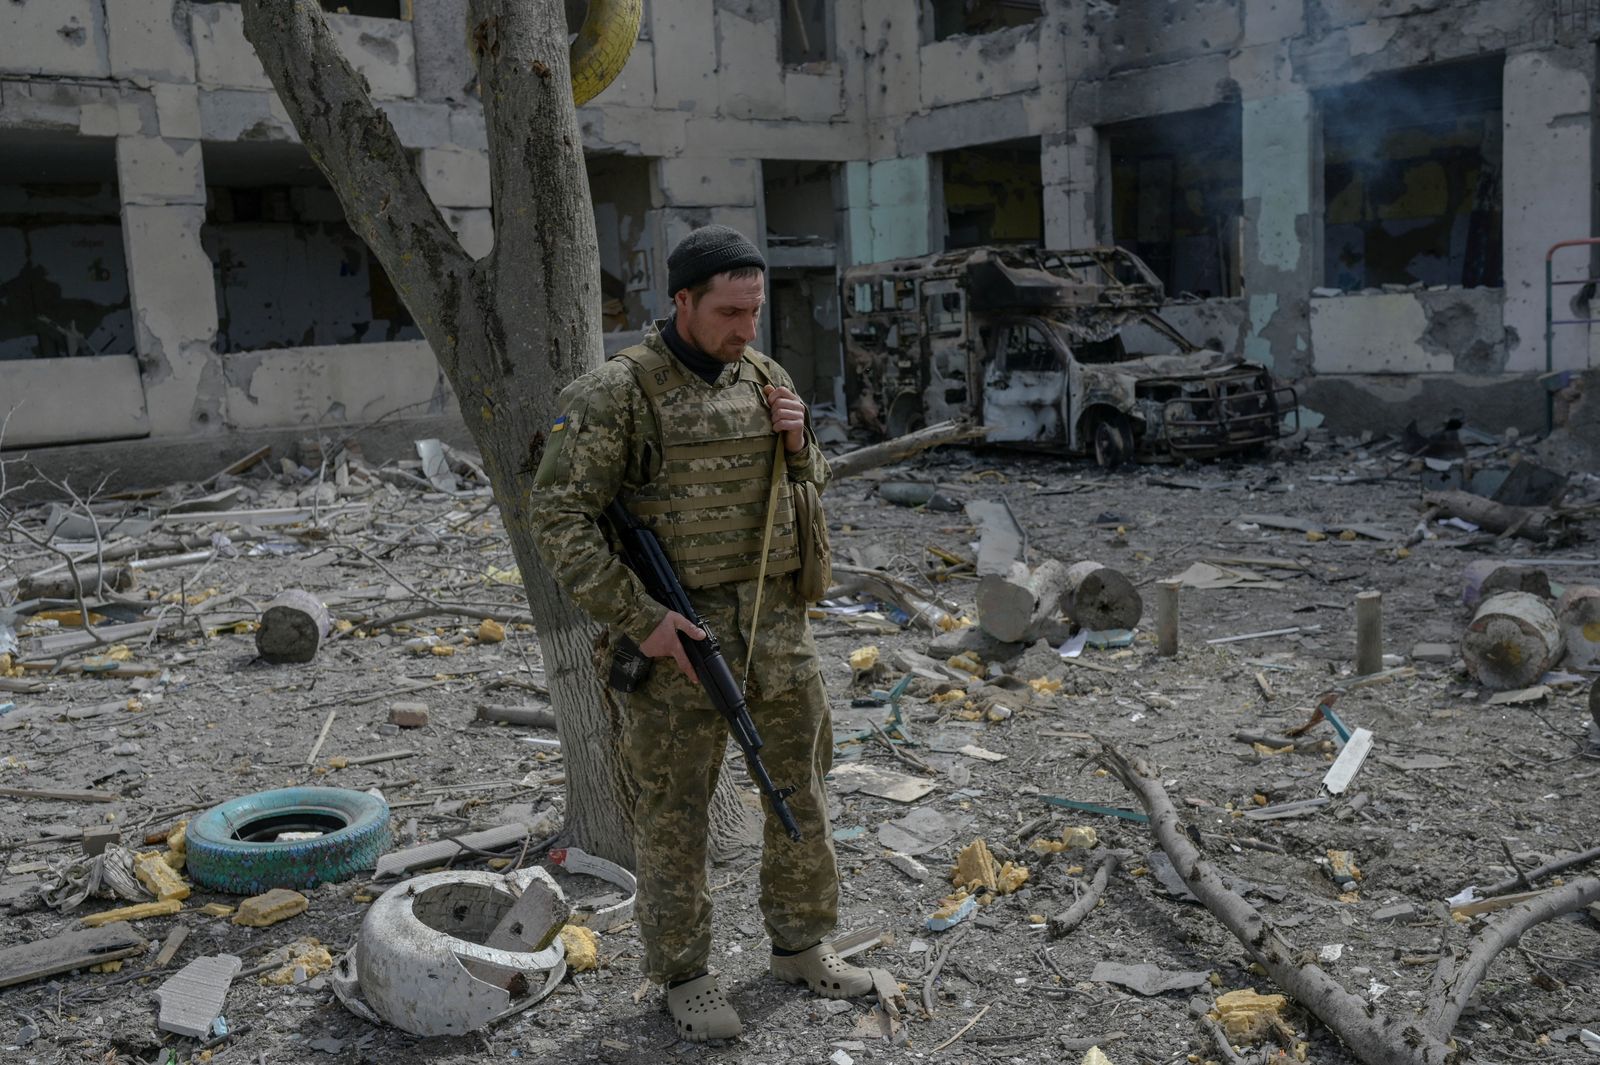 جندي أوكراني يقف في قرية زيليني هاي جنوب أوكرانيا قرب خيرسون - 1 أبريل 2022 - AFP